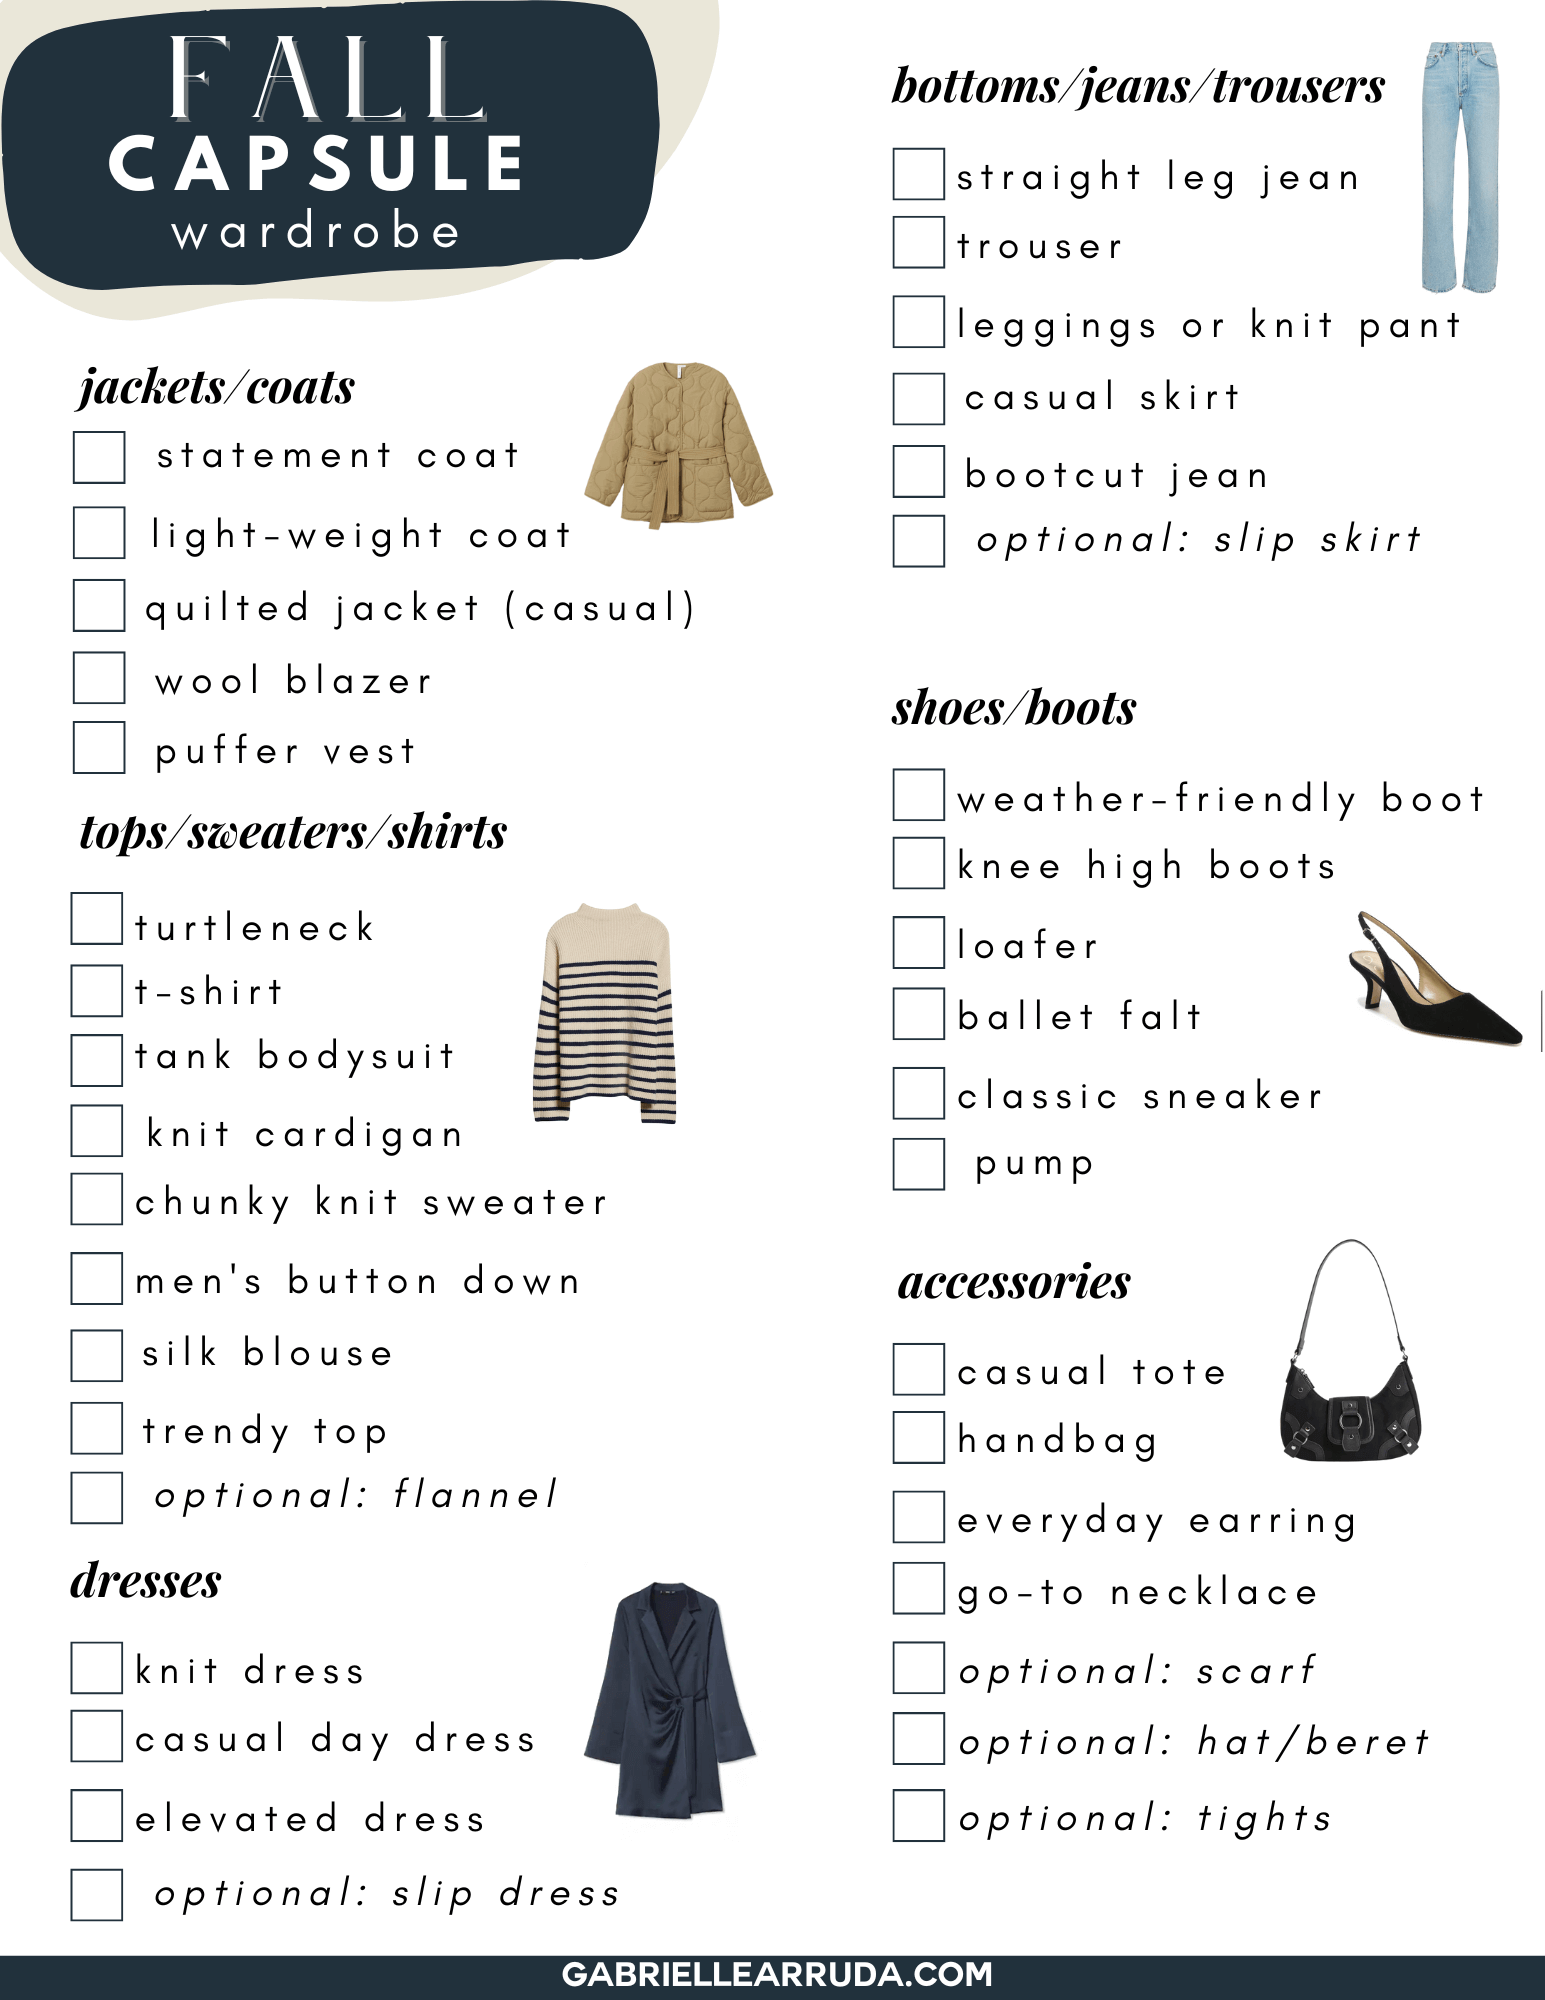 fall capsule wardrobe 2022 checklist 